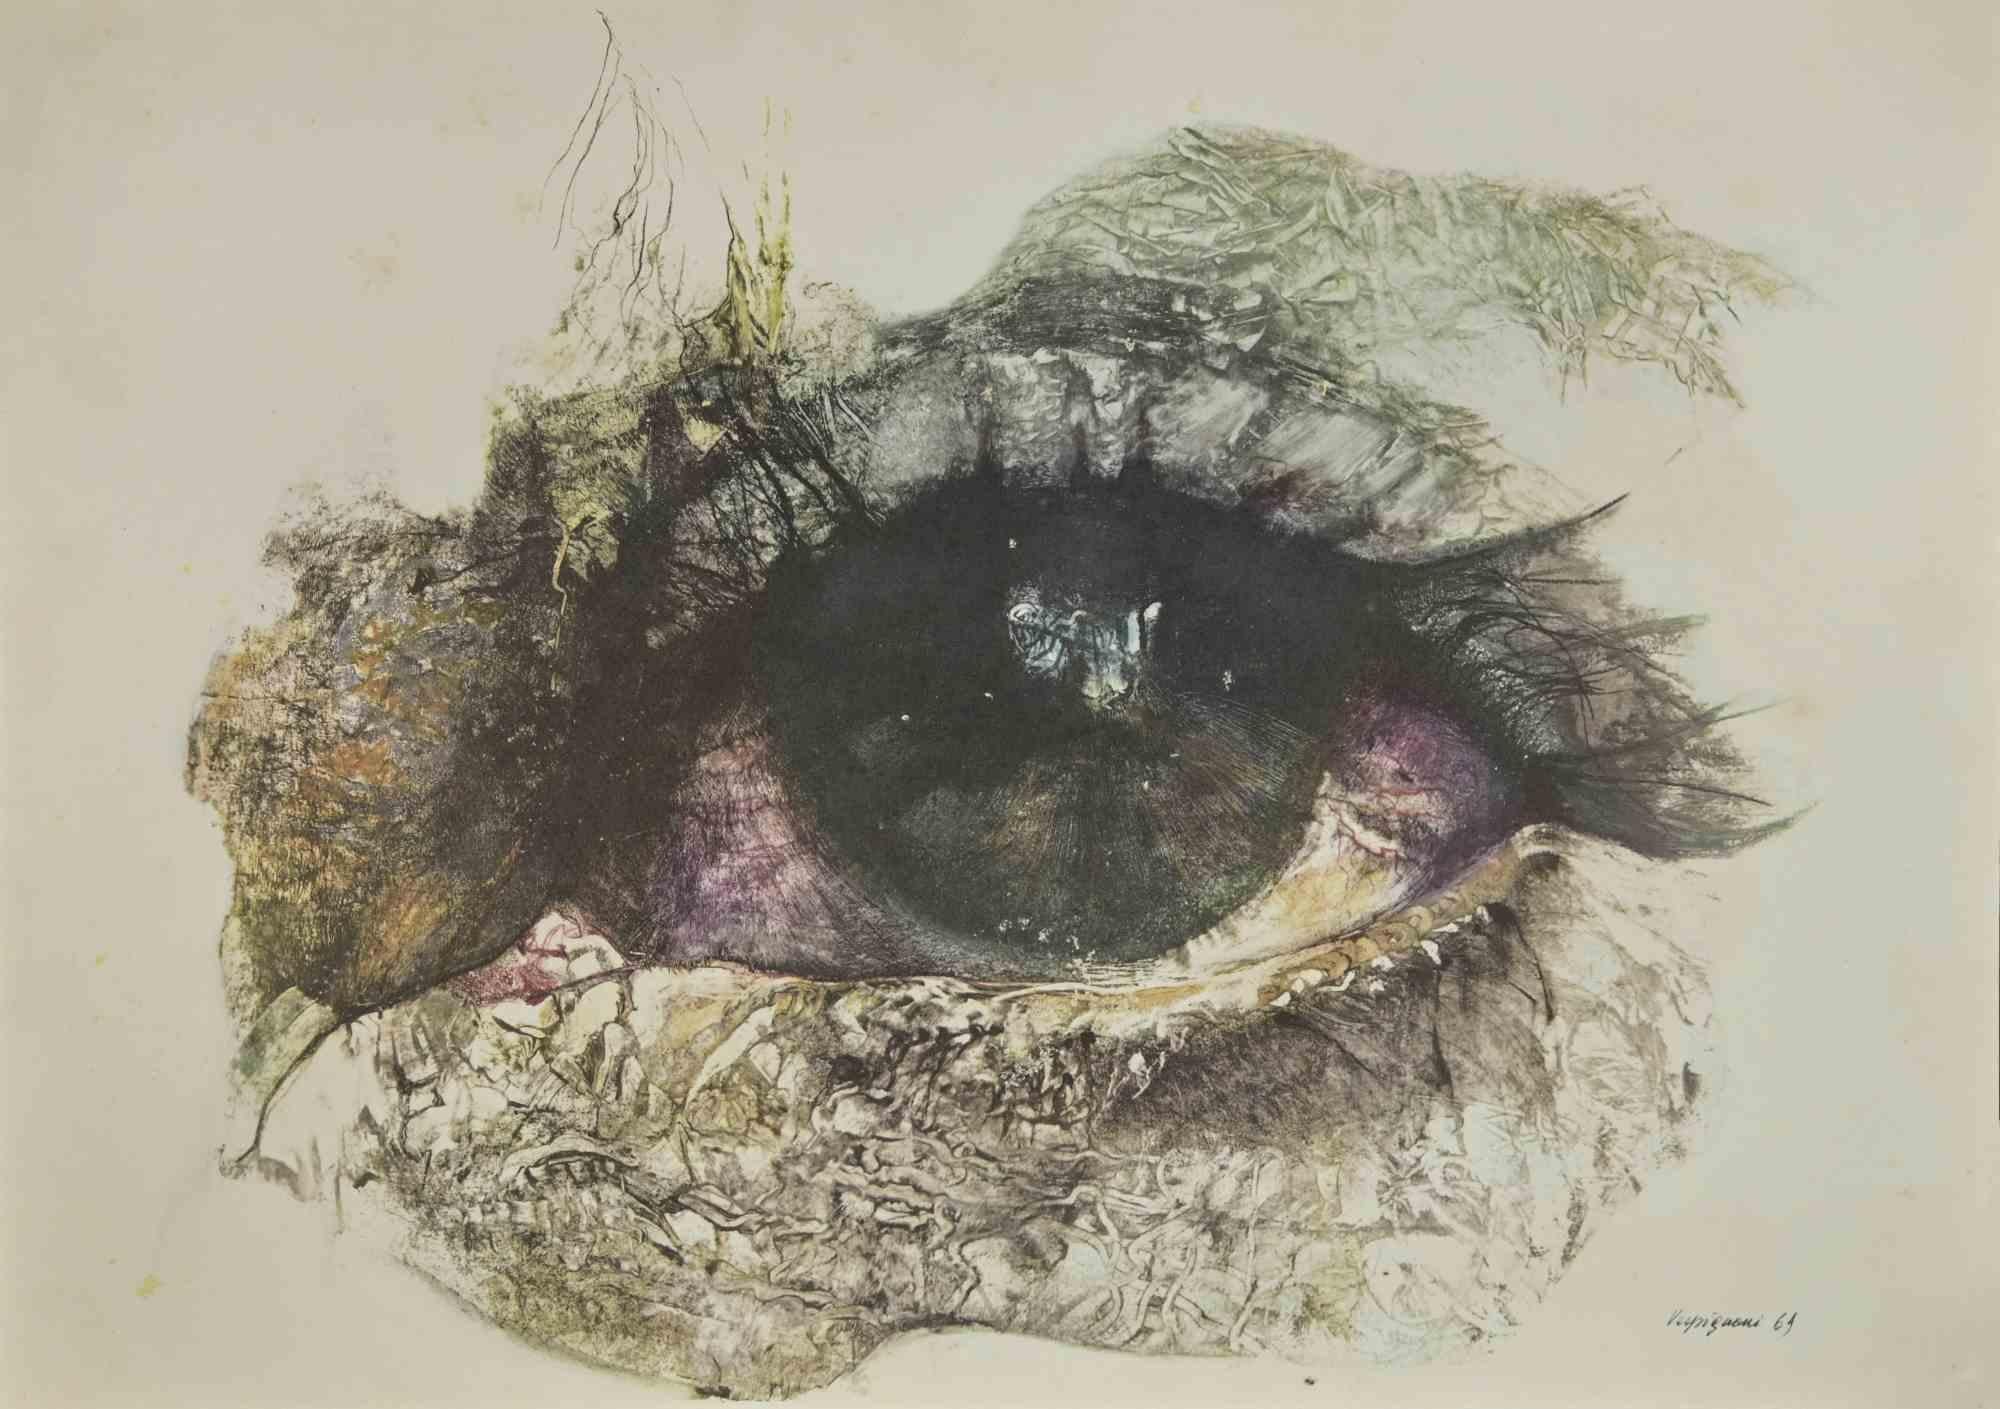 The Eyes - Print by Renzo Vespignani - 1960s